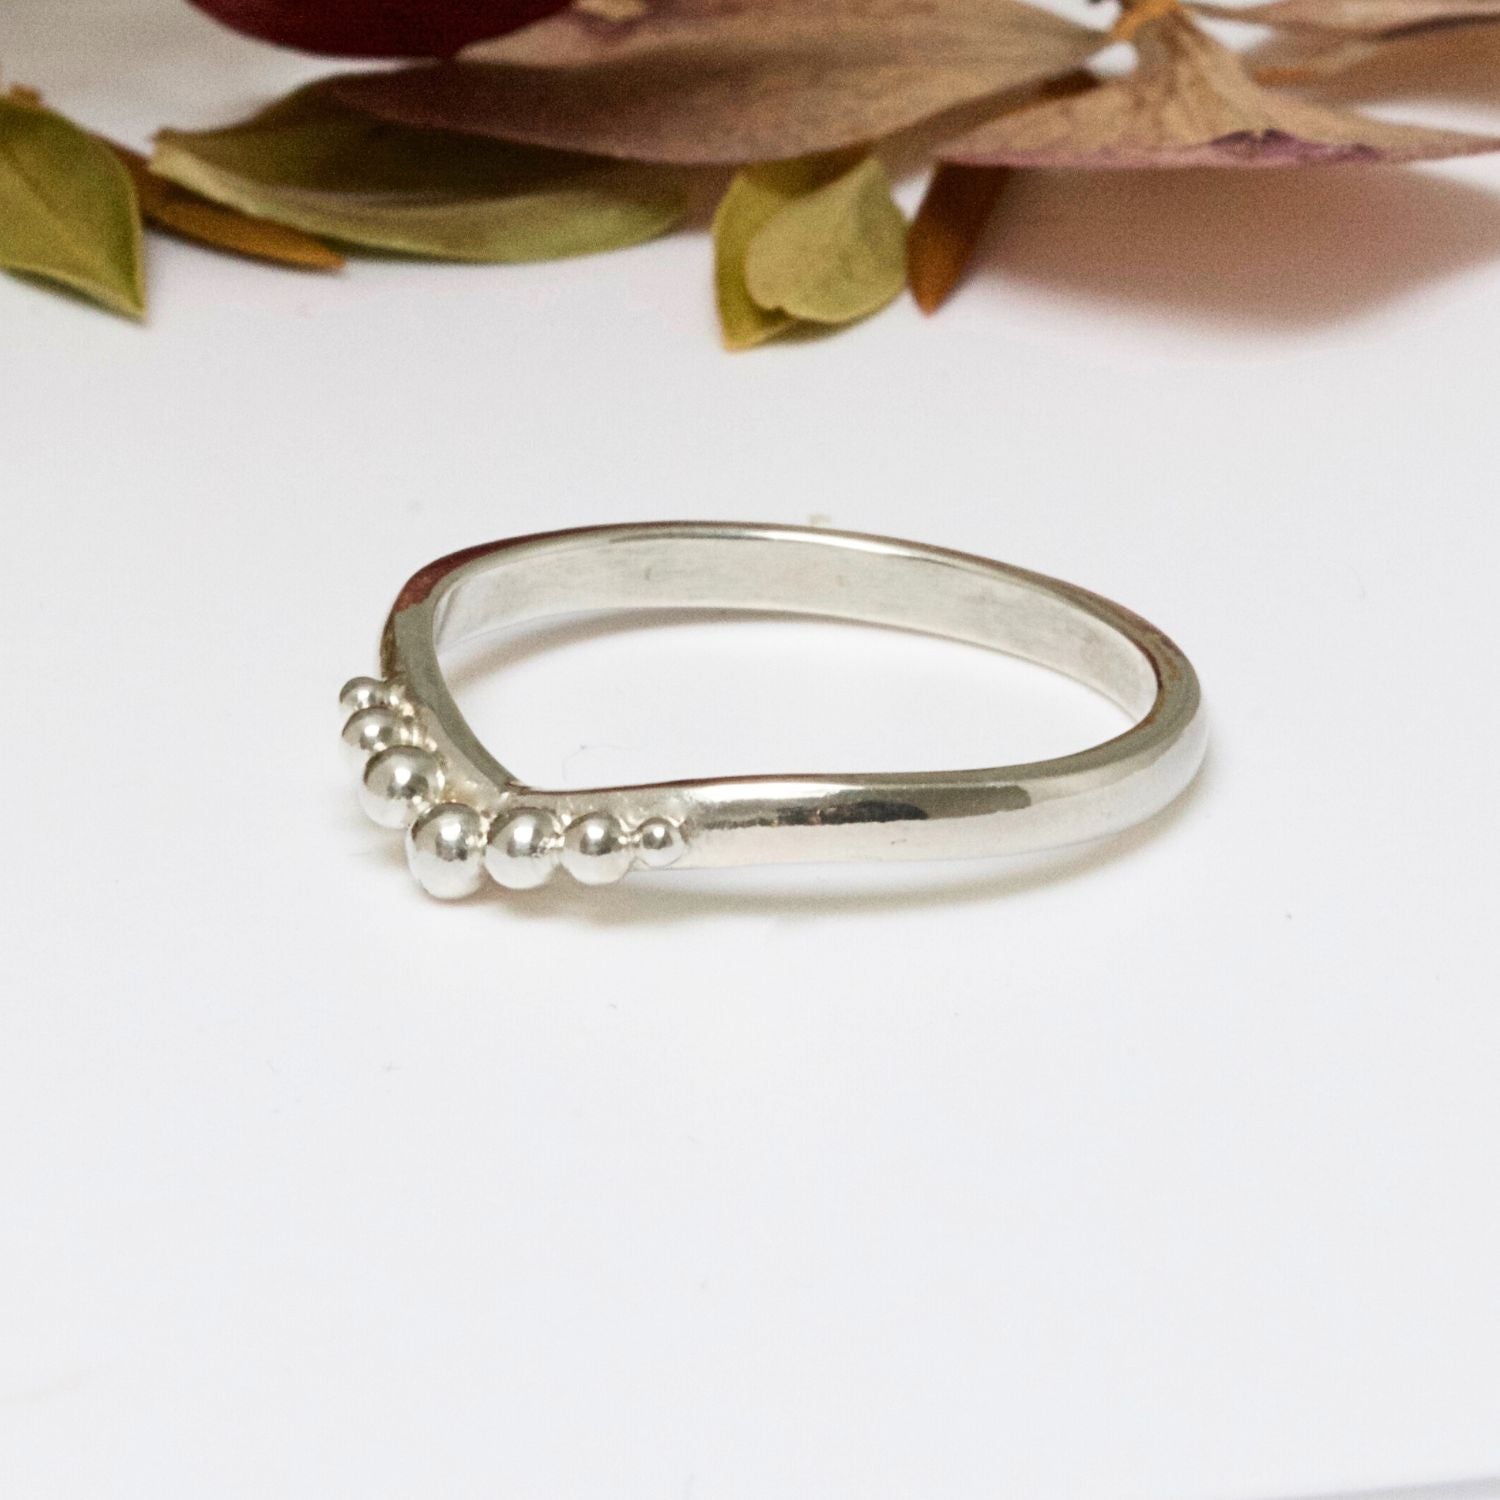 Fairie inspired beaded wedding ring